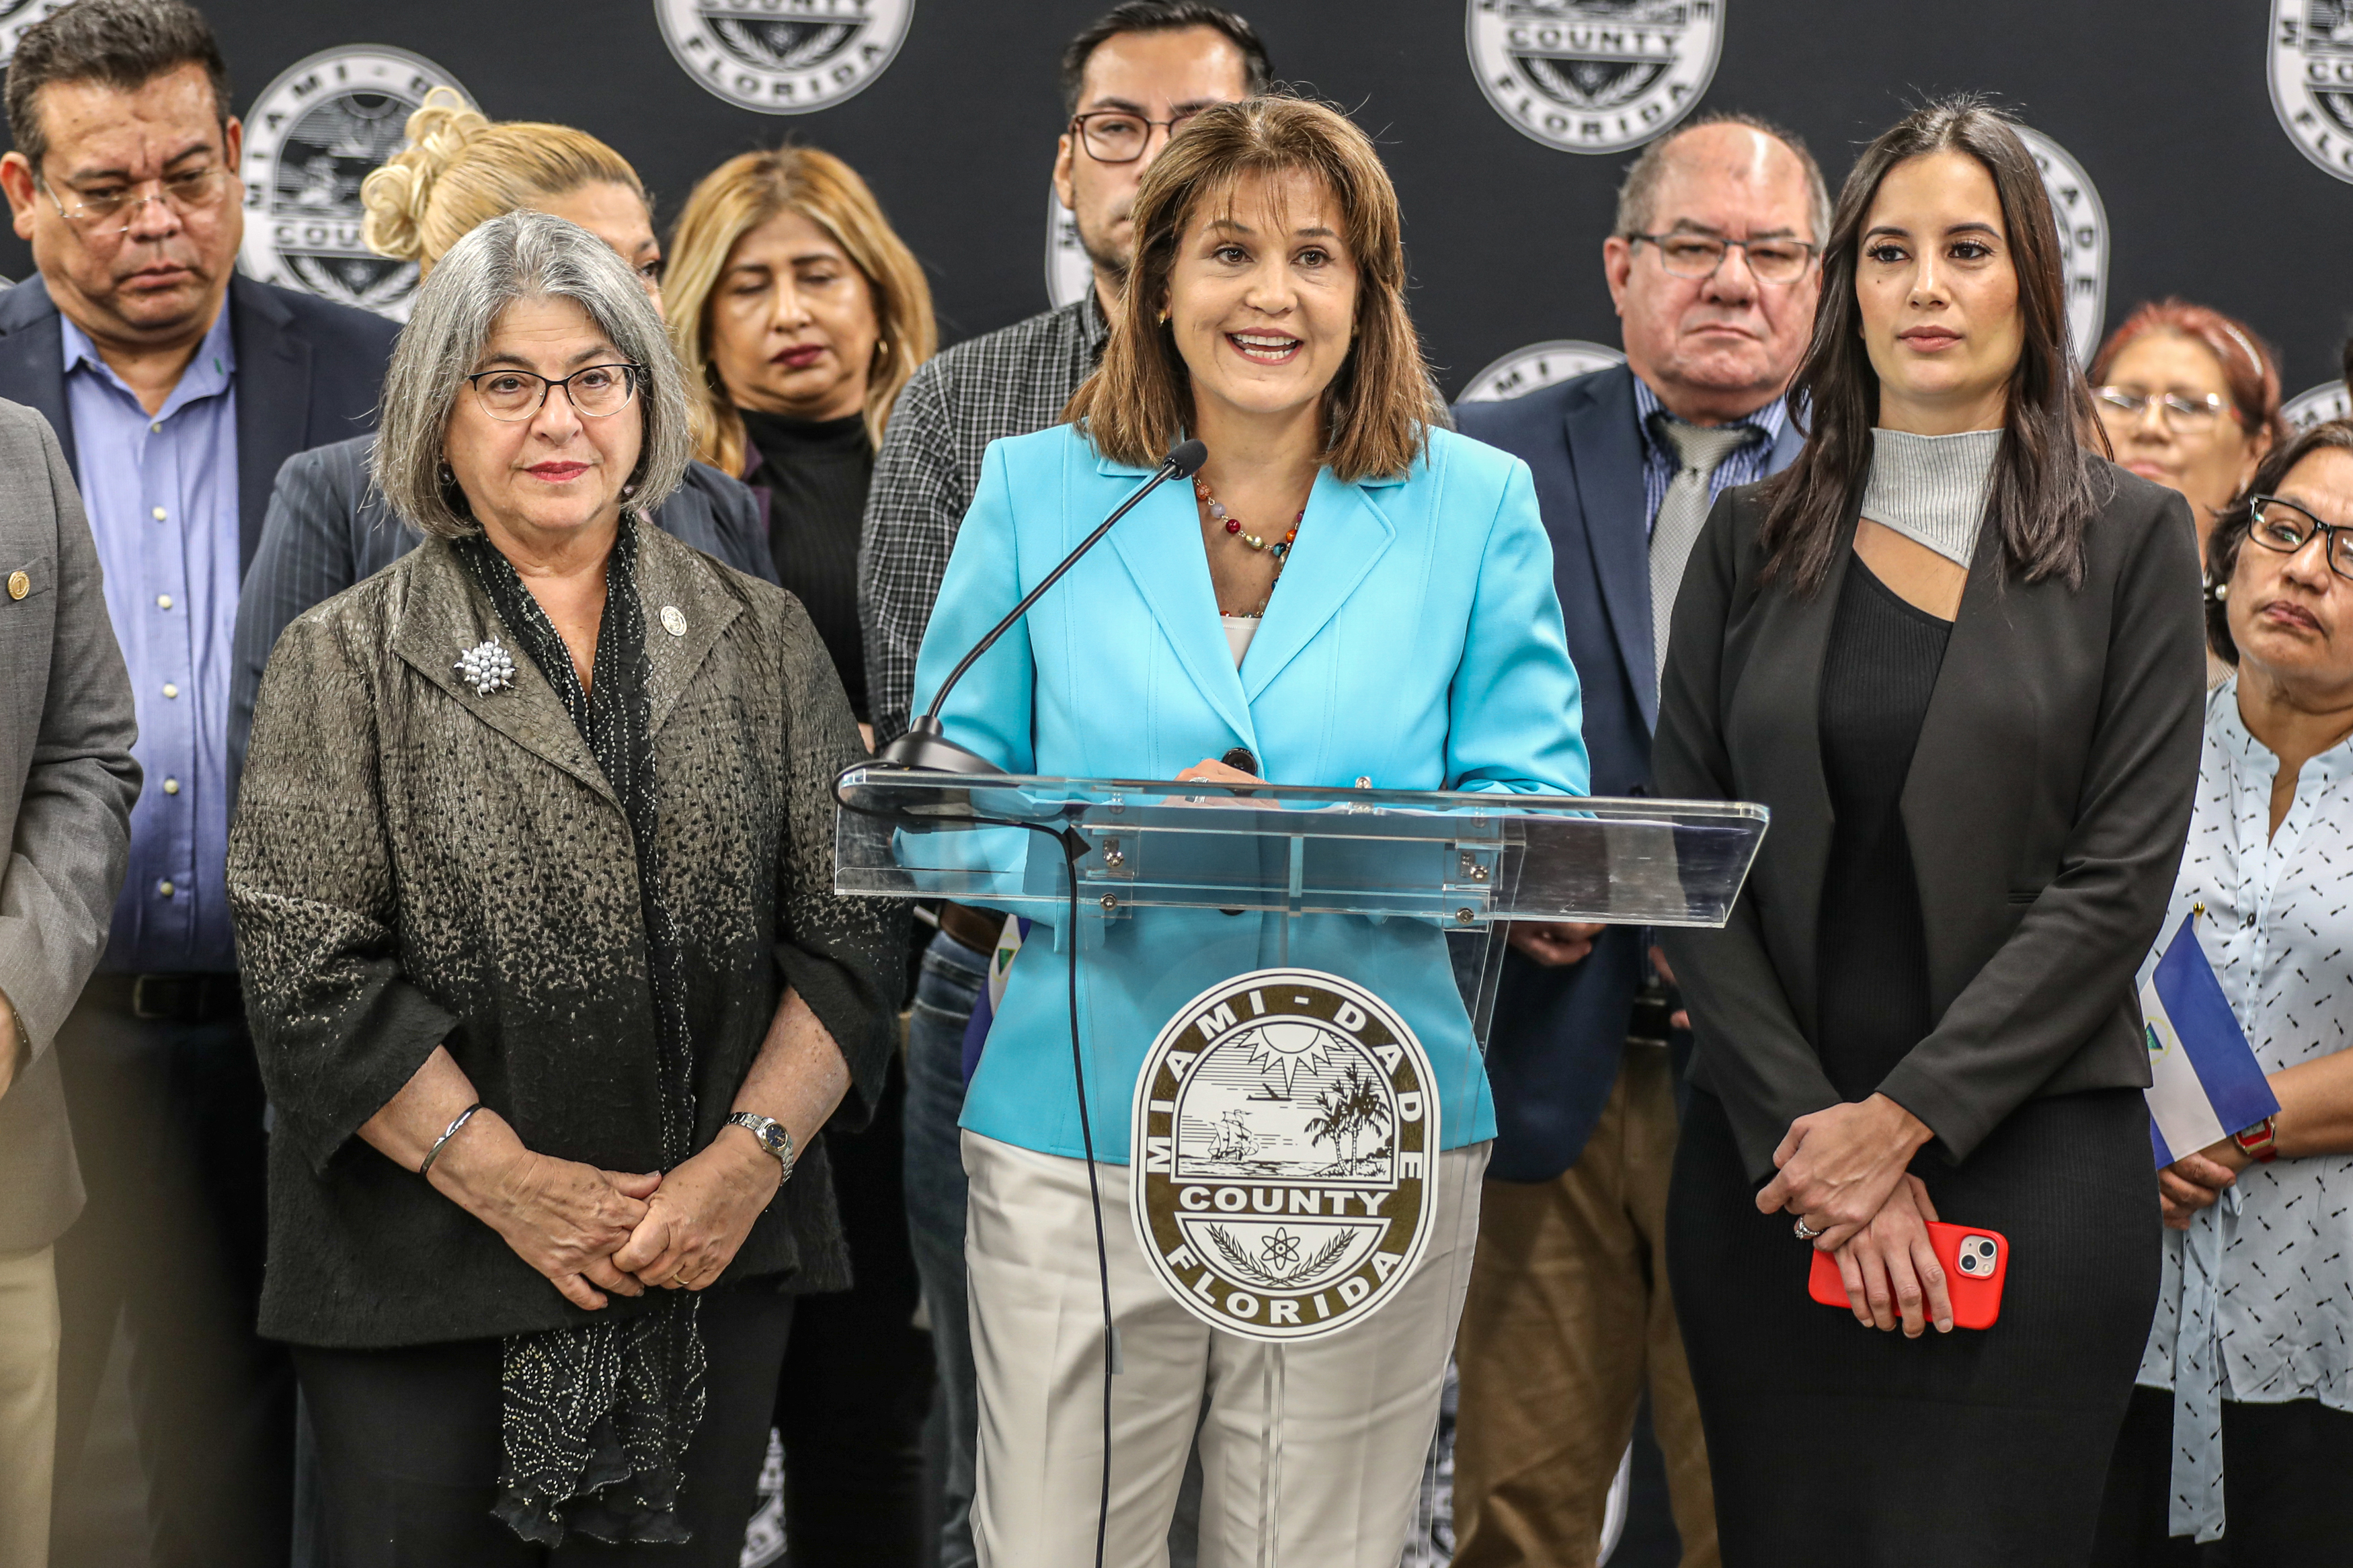 La ex senadora estatal Annette Taddeo habla durante una rueda de prensa junto a expresos políticos nicaragüenses, hoy en Miami, Florida (EE. UU). EFE/Giorgio Viera
